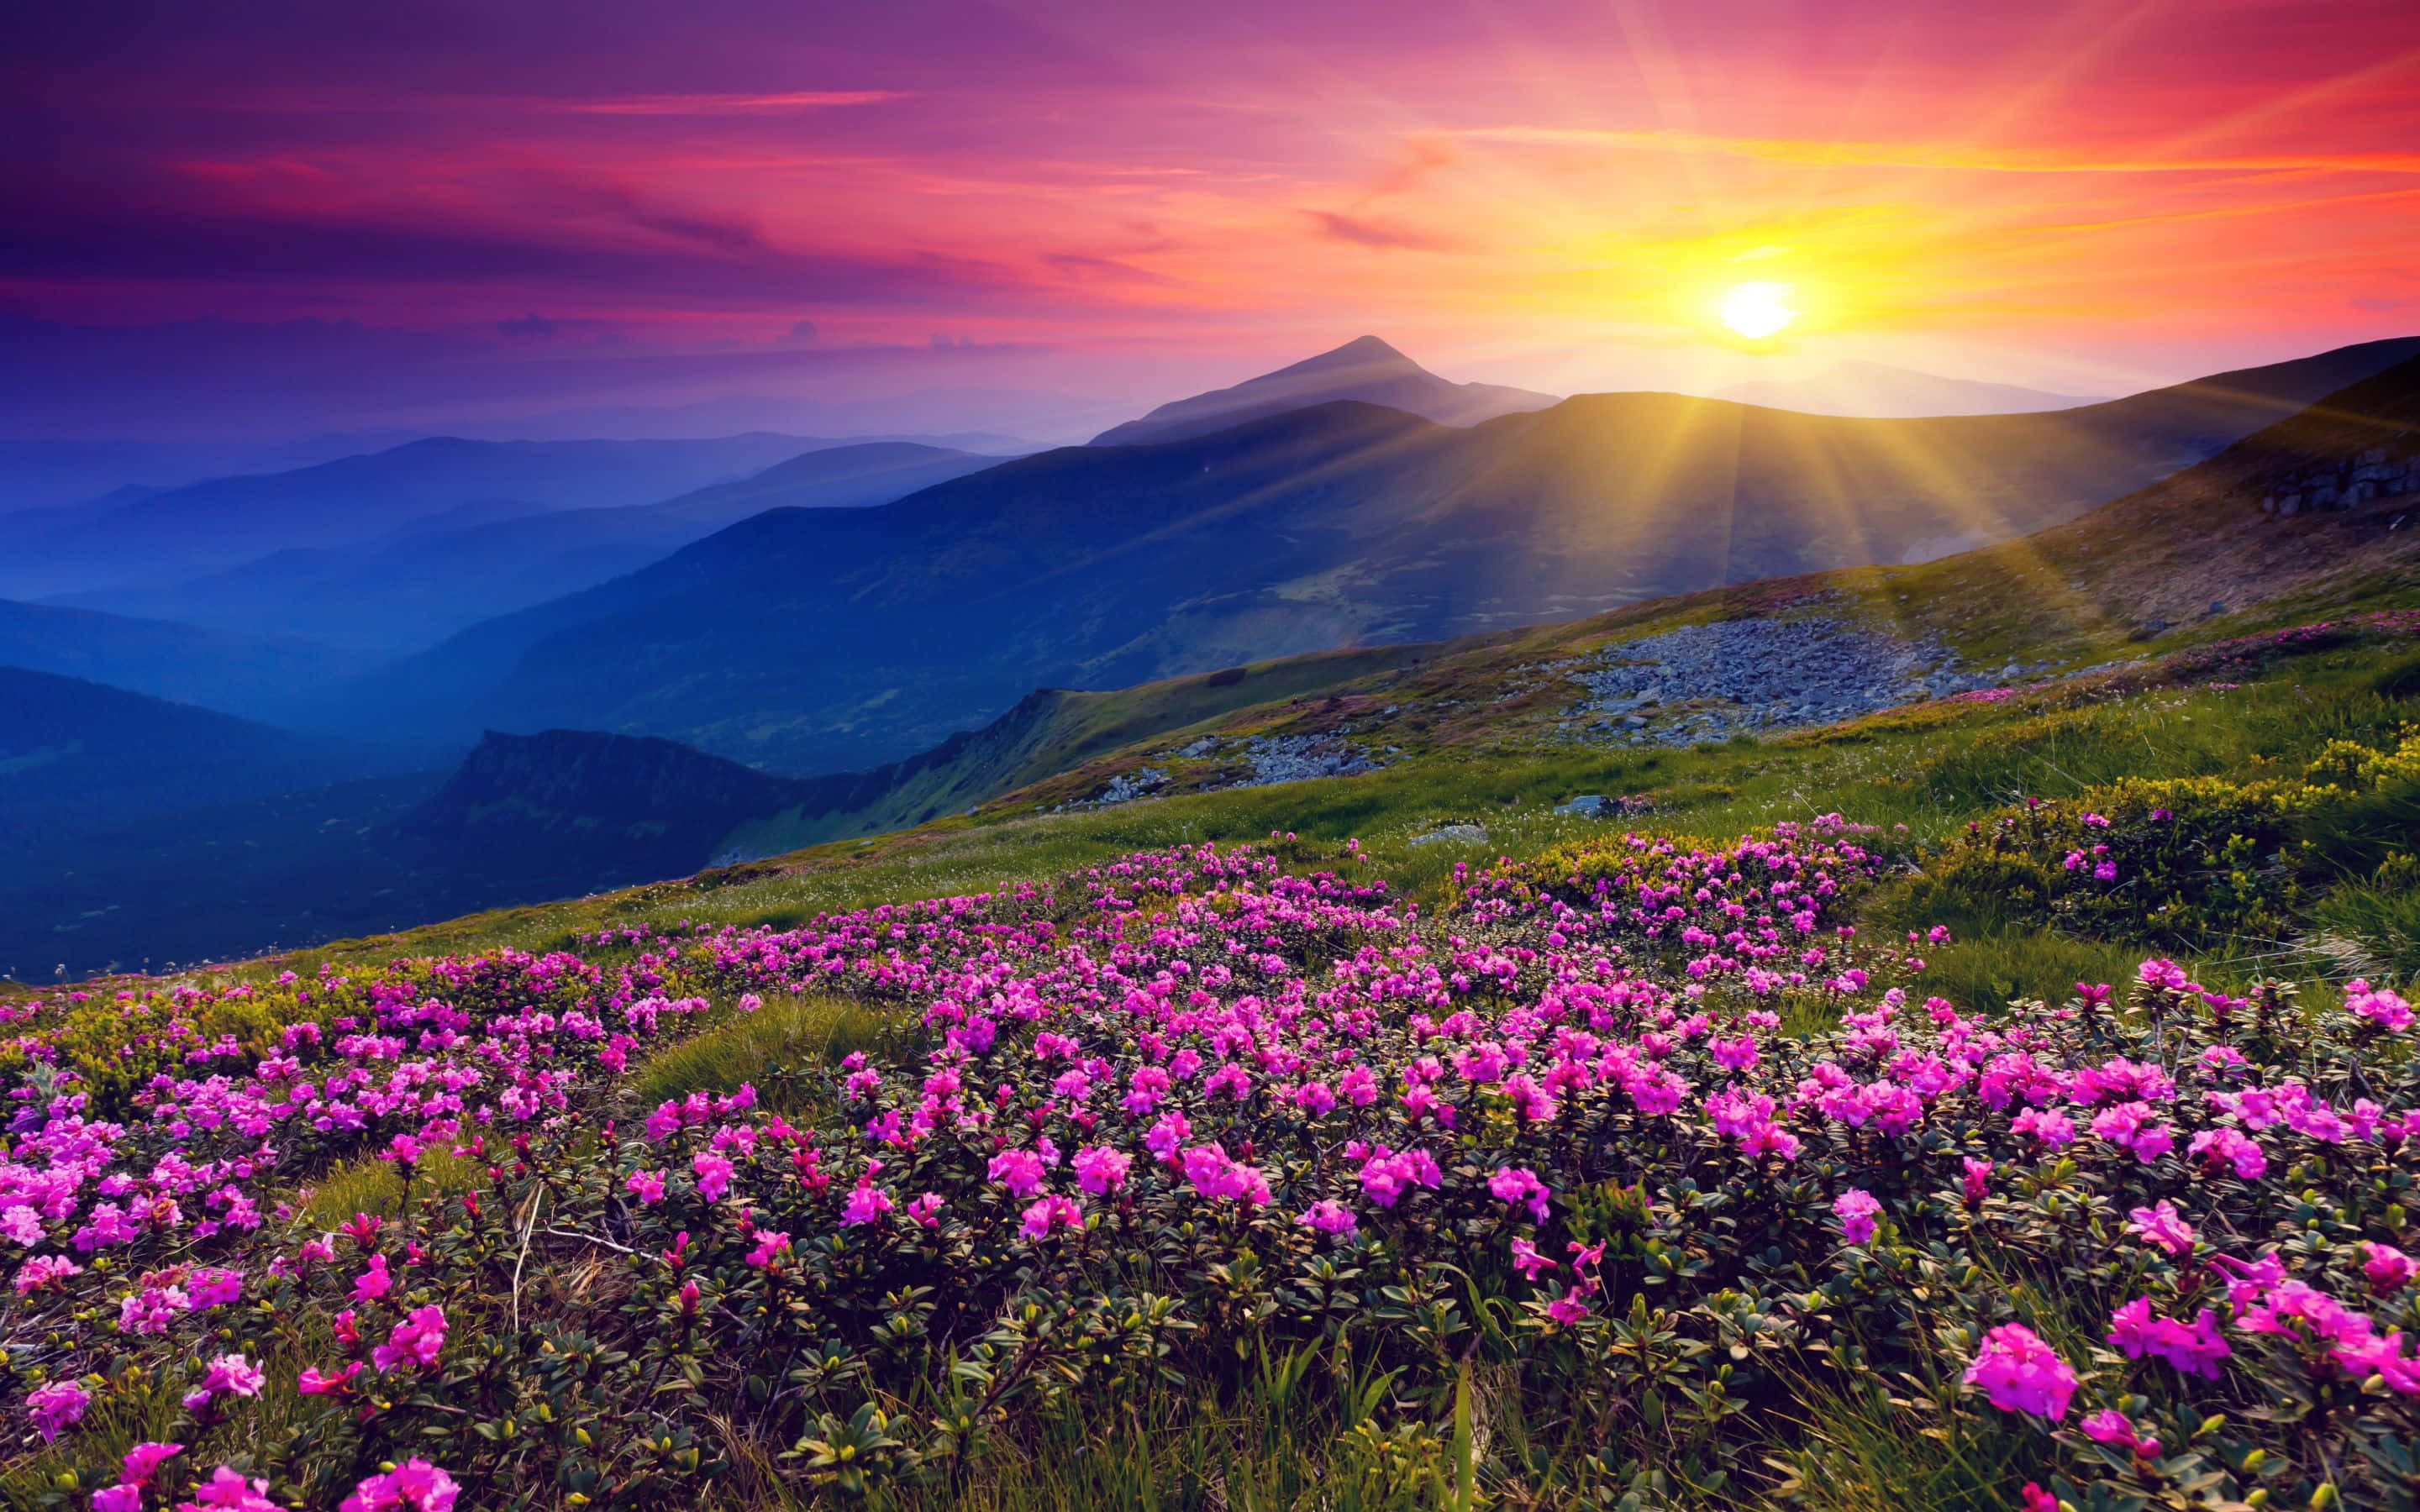 Schönesbild Eines Berges Mit Lila Blumen Bei Sonnenuntergang